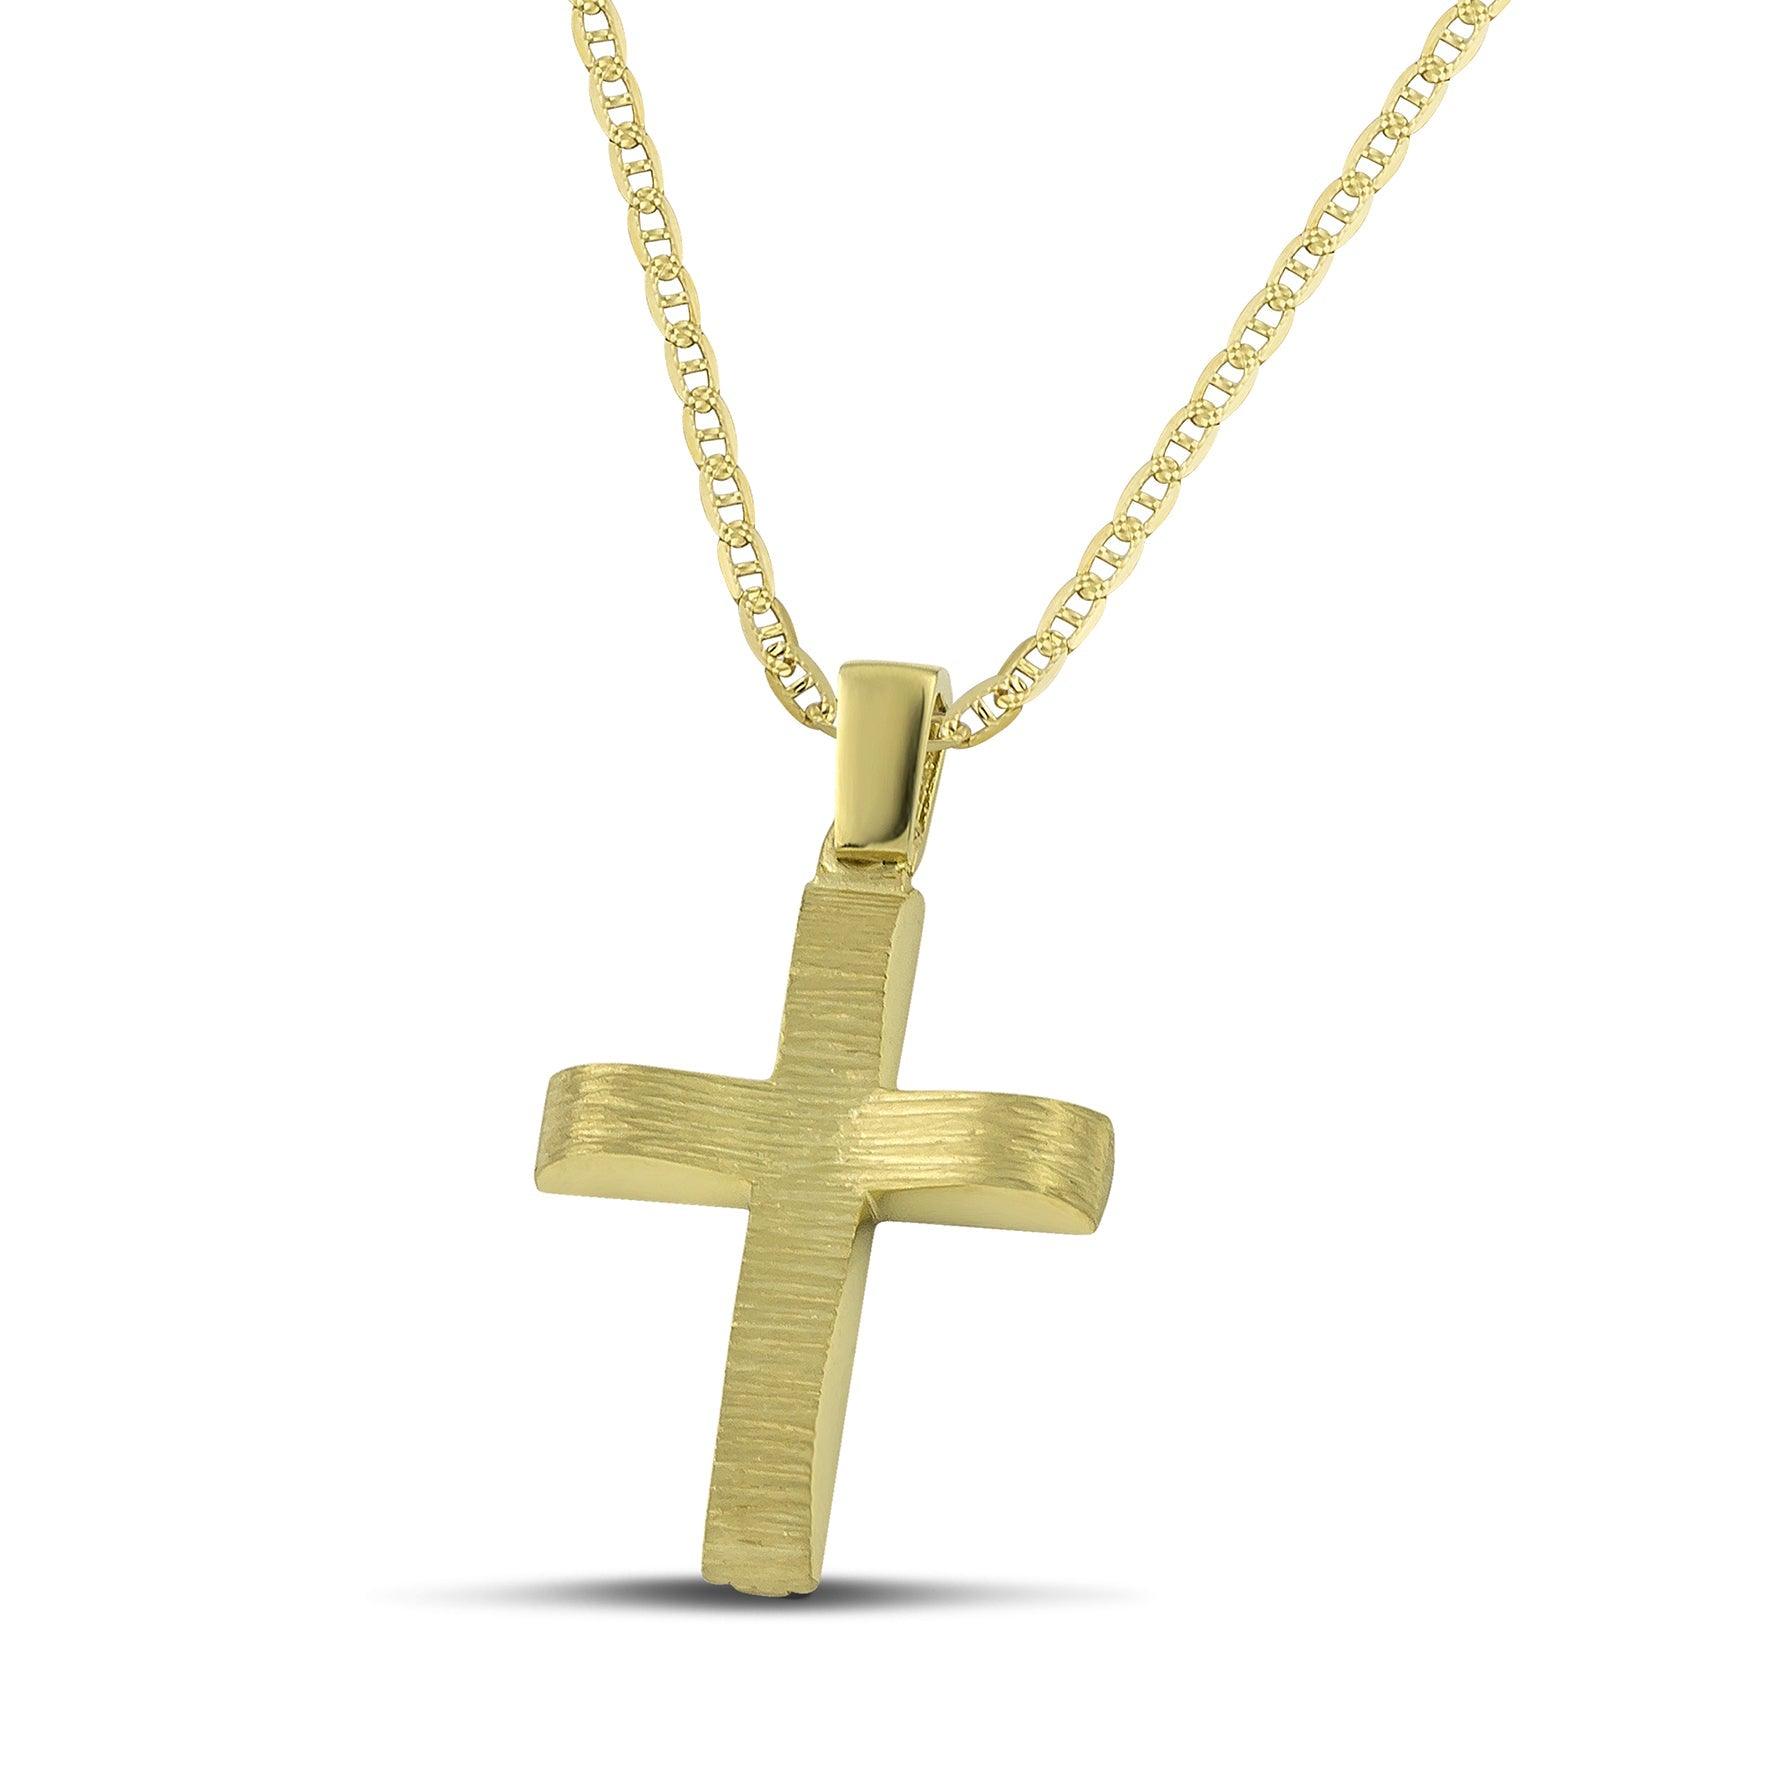 Μοντέρνος βαπτιστικός σταυρός χρυσός Κ14 για αγόρι, διπλής όψης, σαγρέ, σε «θ» αλυσίδα. 